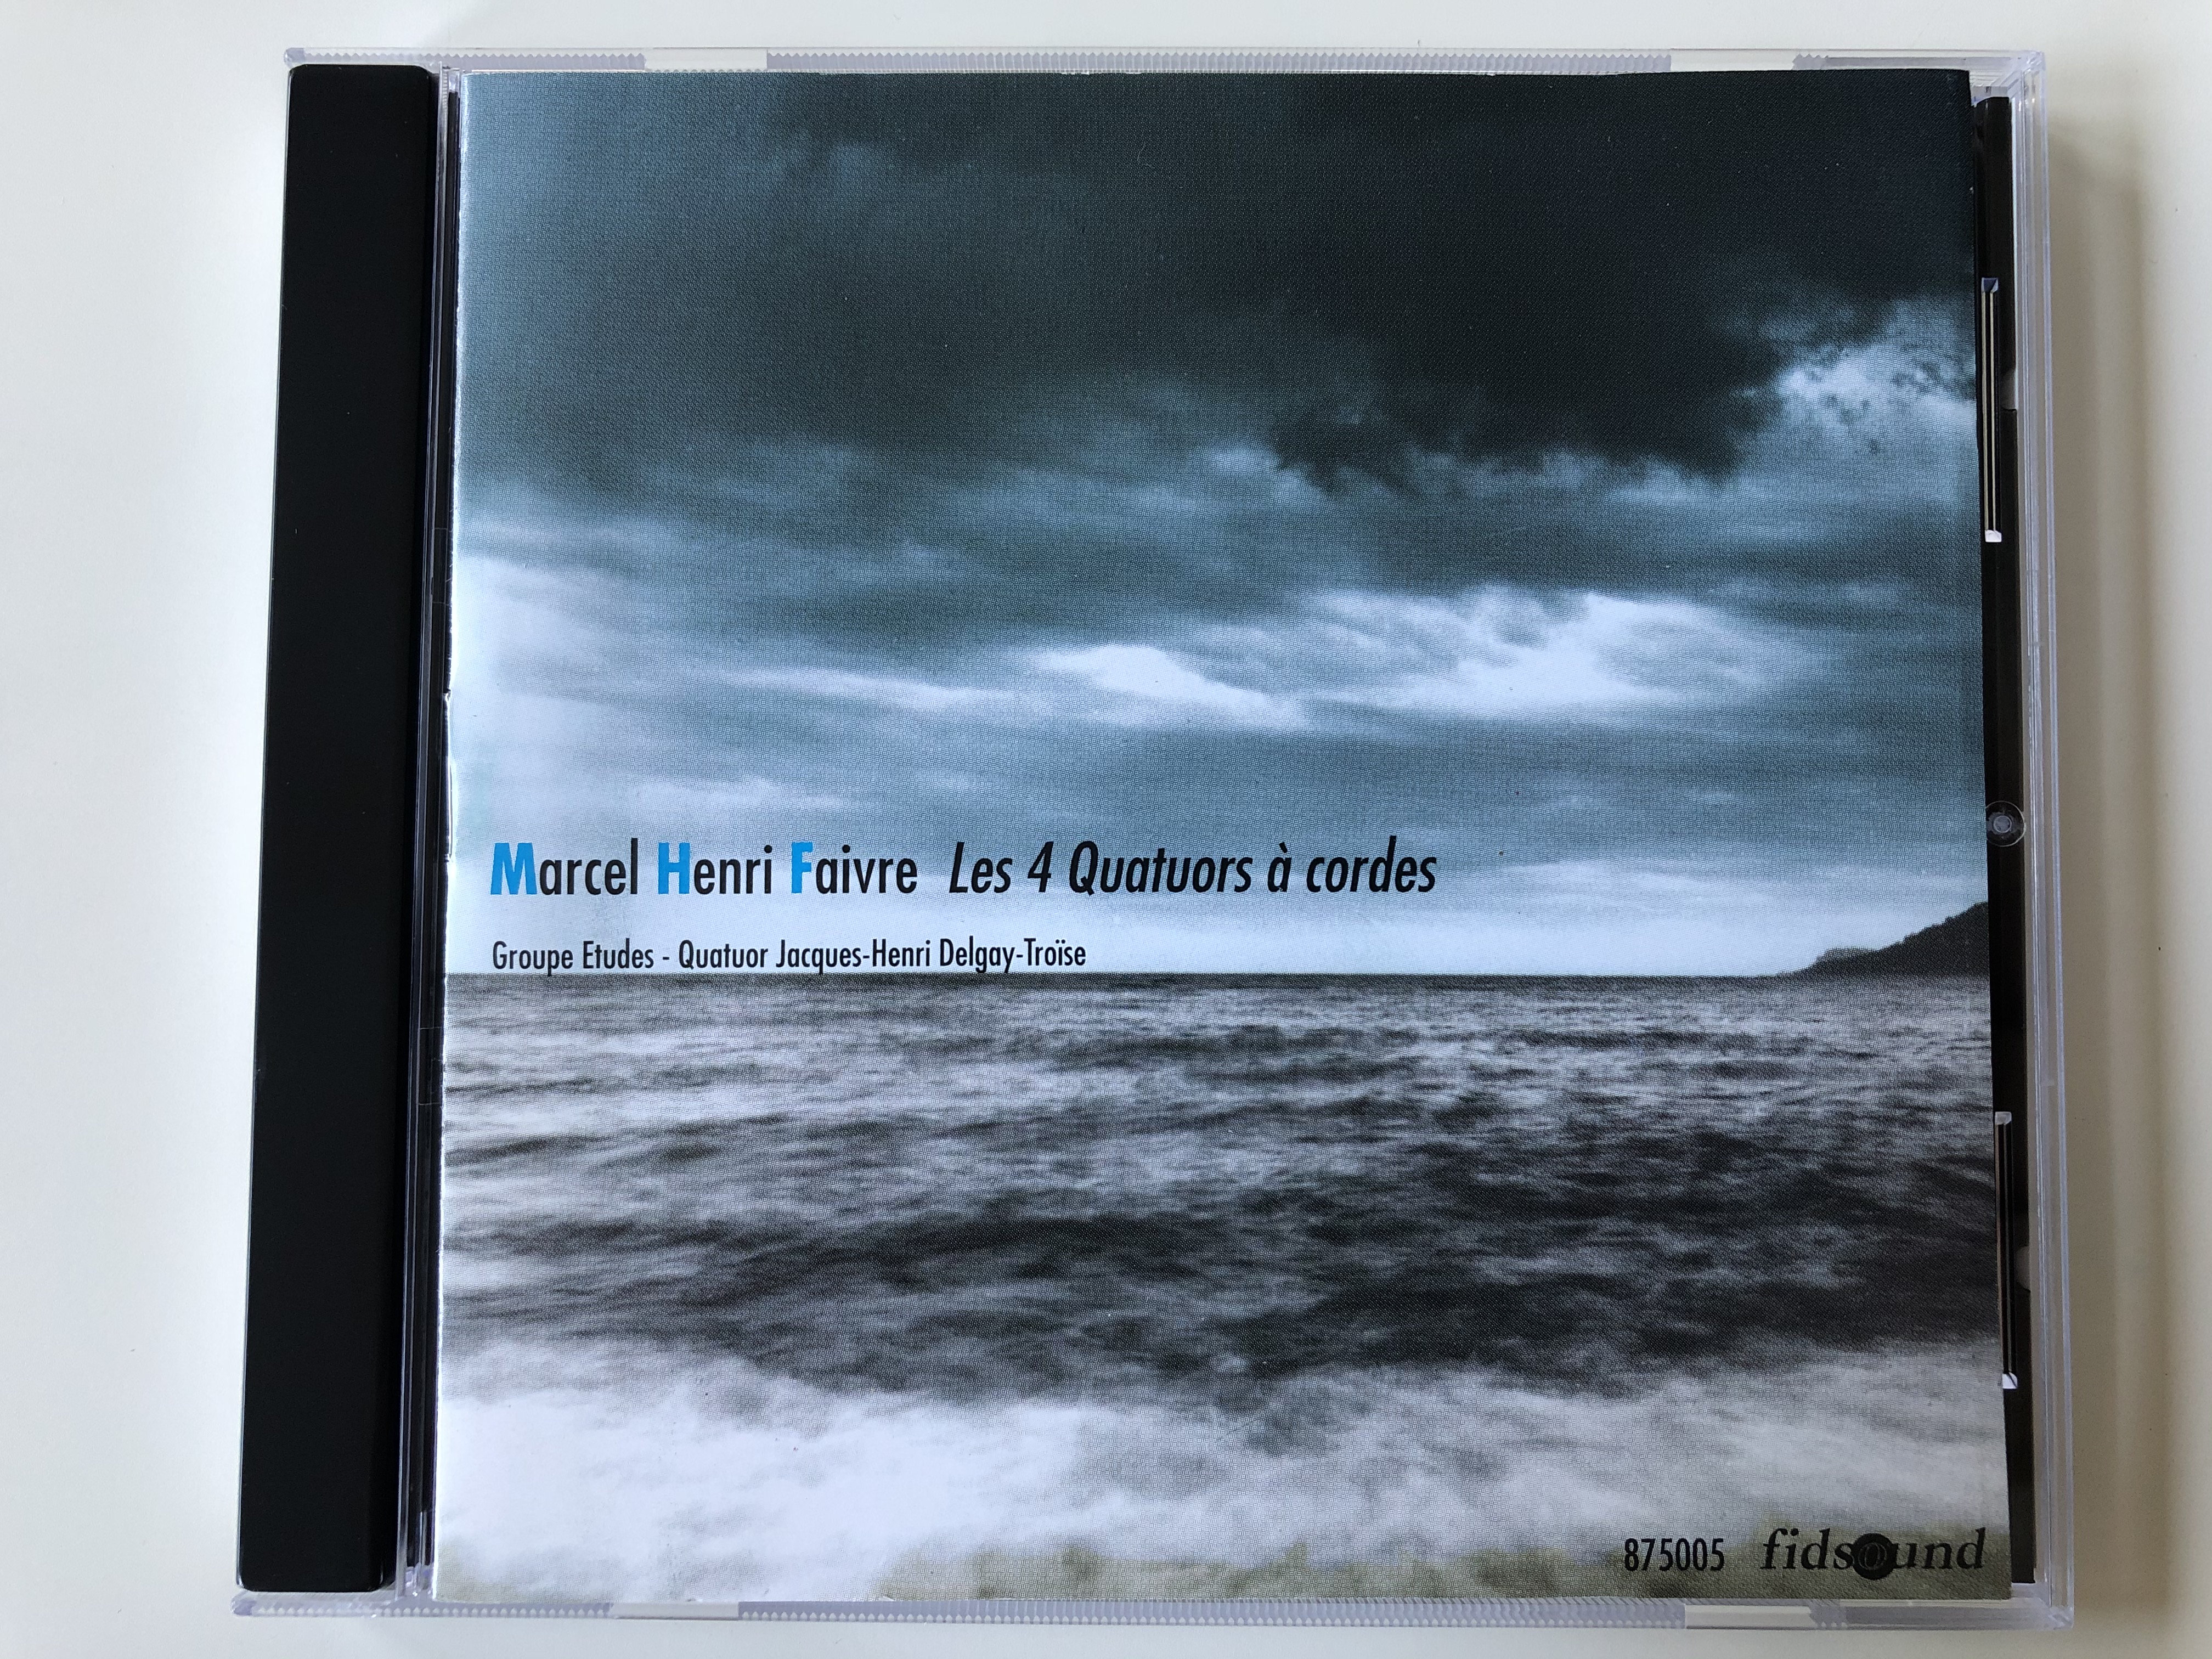 marcel-henri-faivre-les-4-quatuors-cordes-groupe-etudes-quatuor-jacques-henri-delgay-tro-se-fidsound-audio-cd-1995-875005-1-.jpg